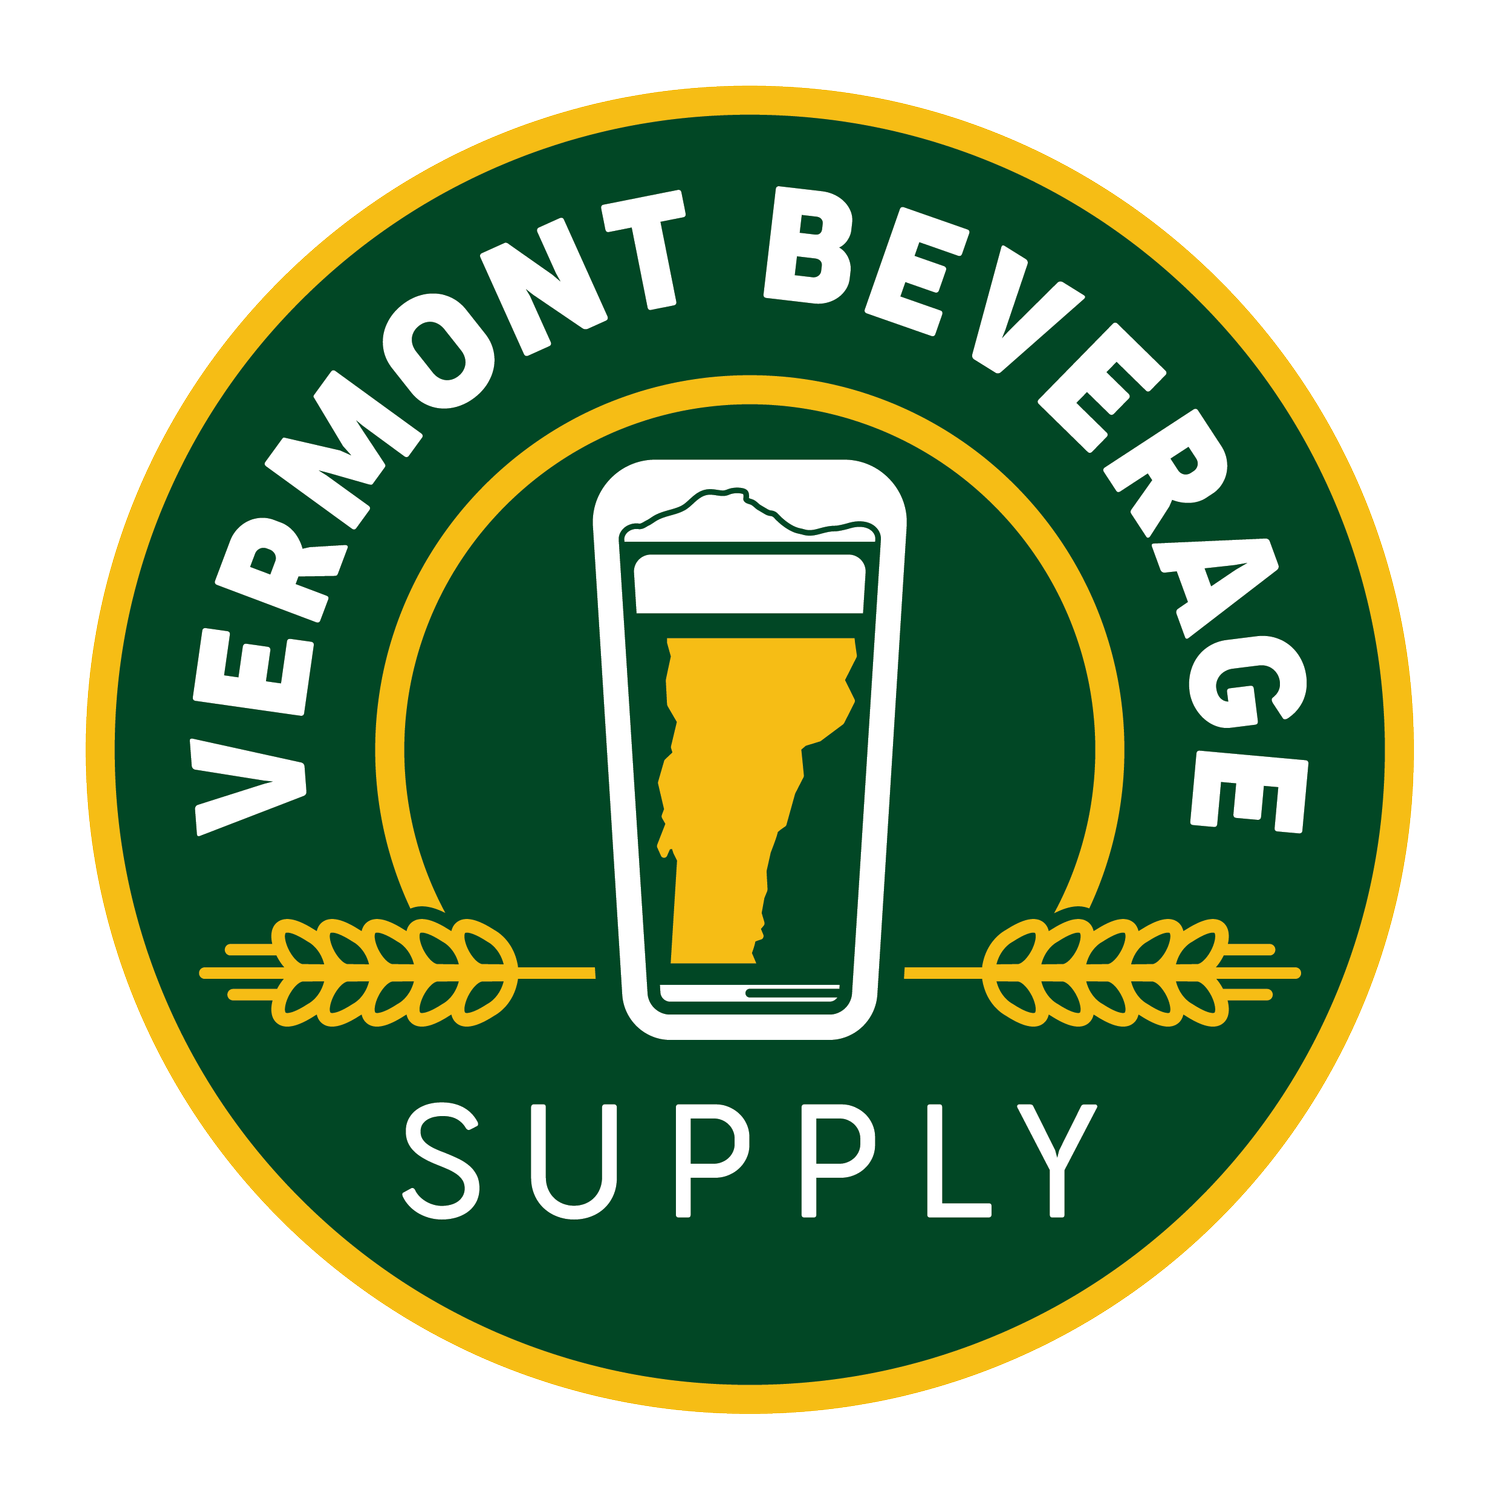 Vermont Beverage Supply